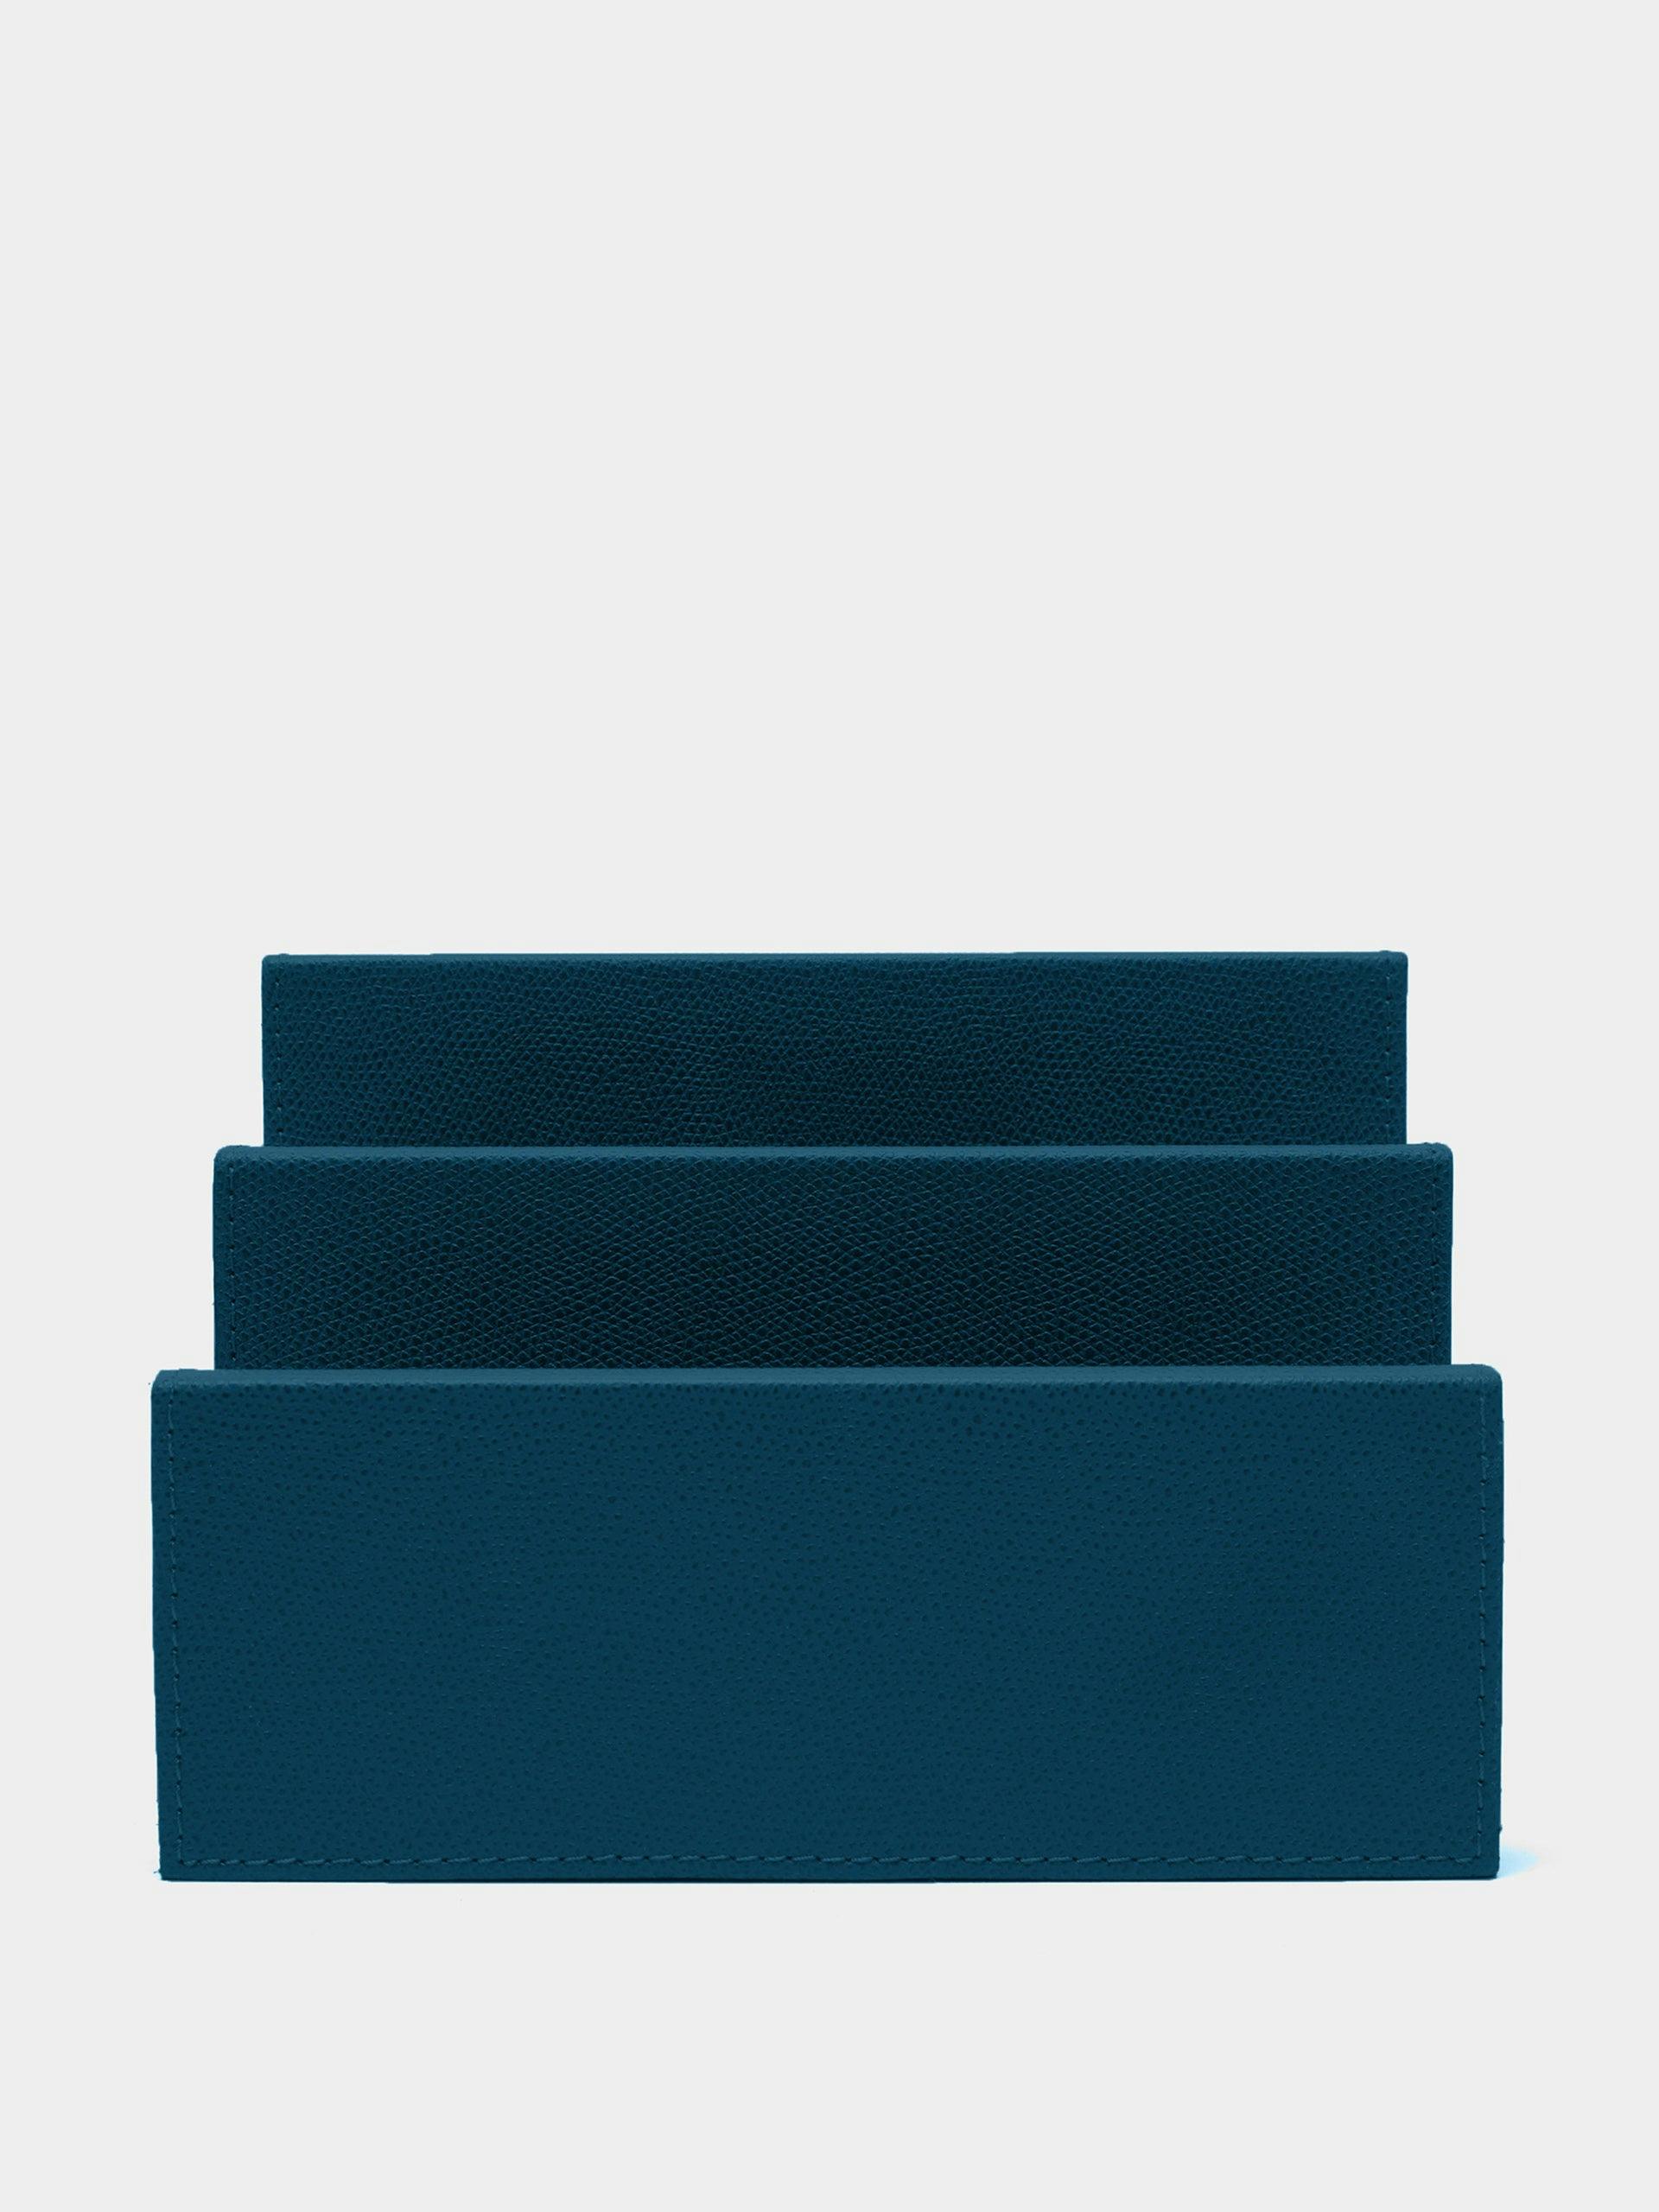 Blue leather letter holder